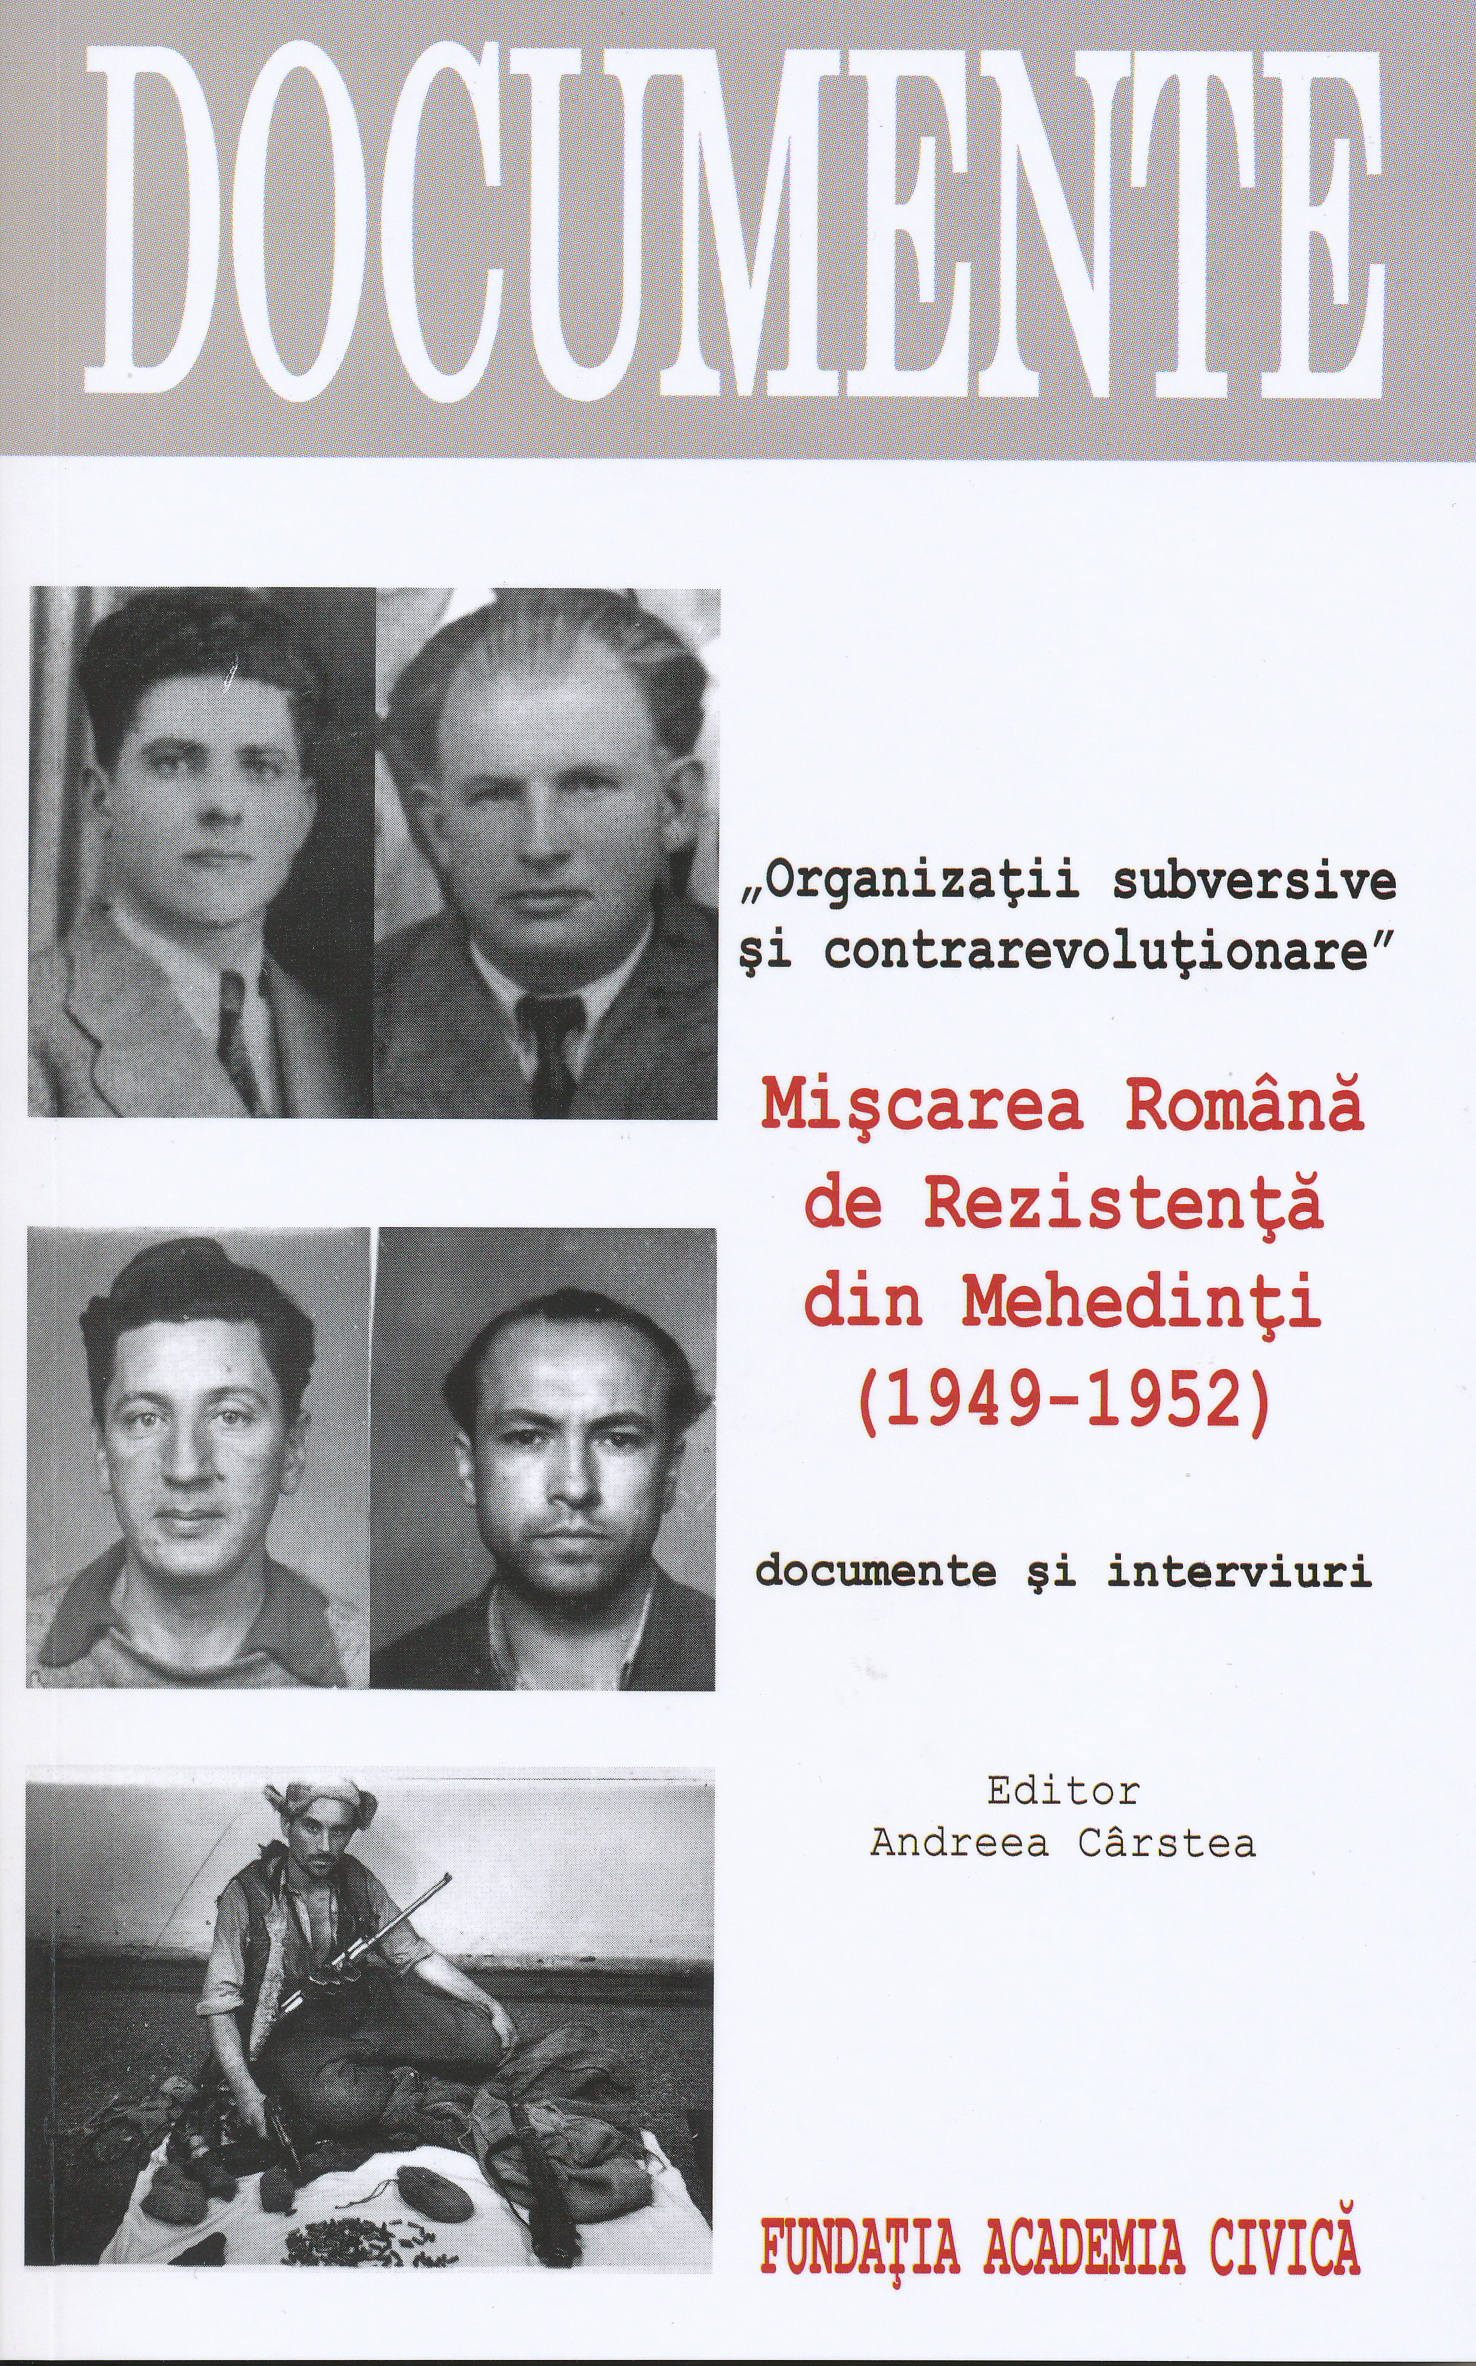 Miscarea Romana de Rezistenta din Mehedinti (1949-1952) | carturesti.ro imagine 2022